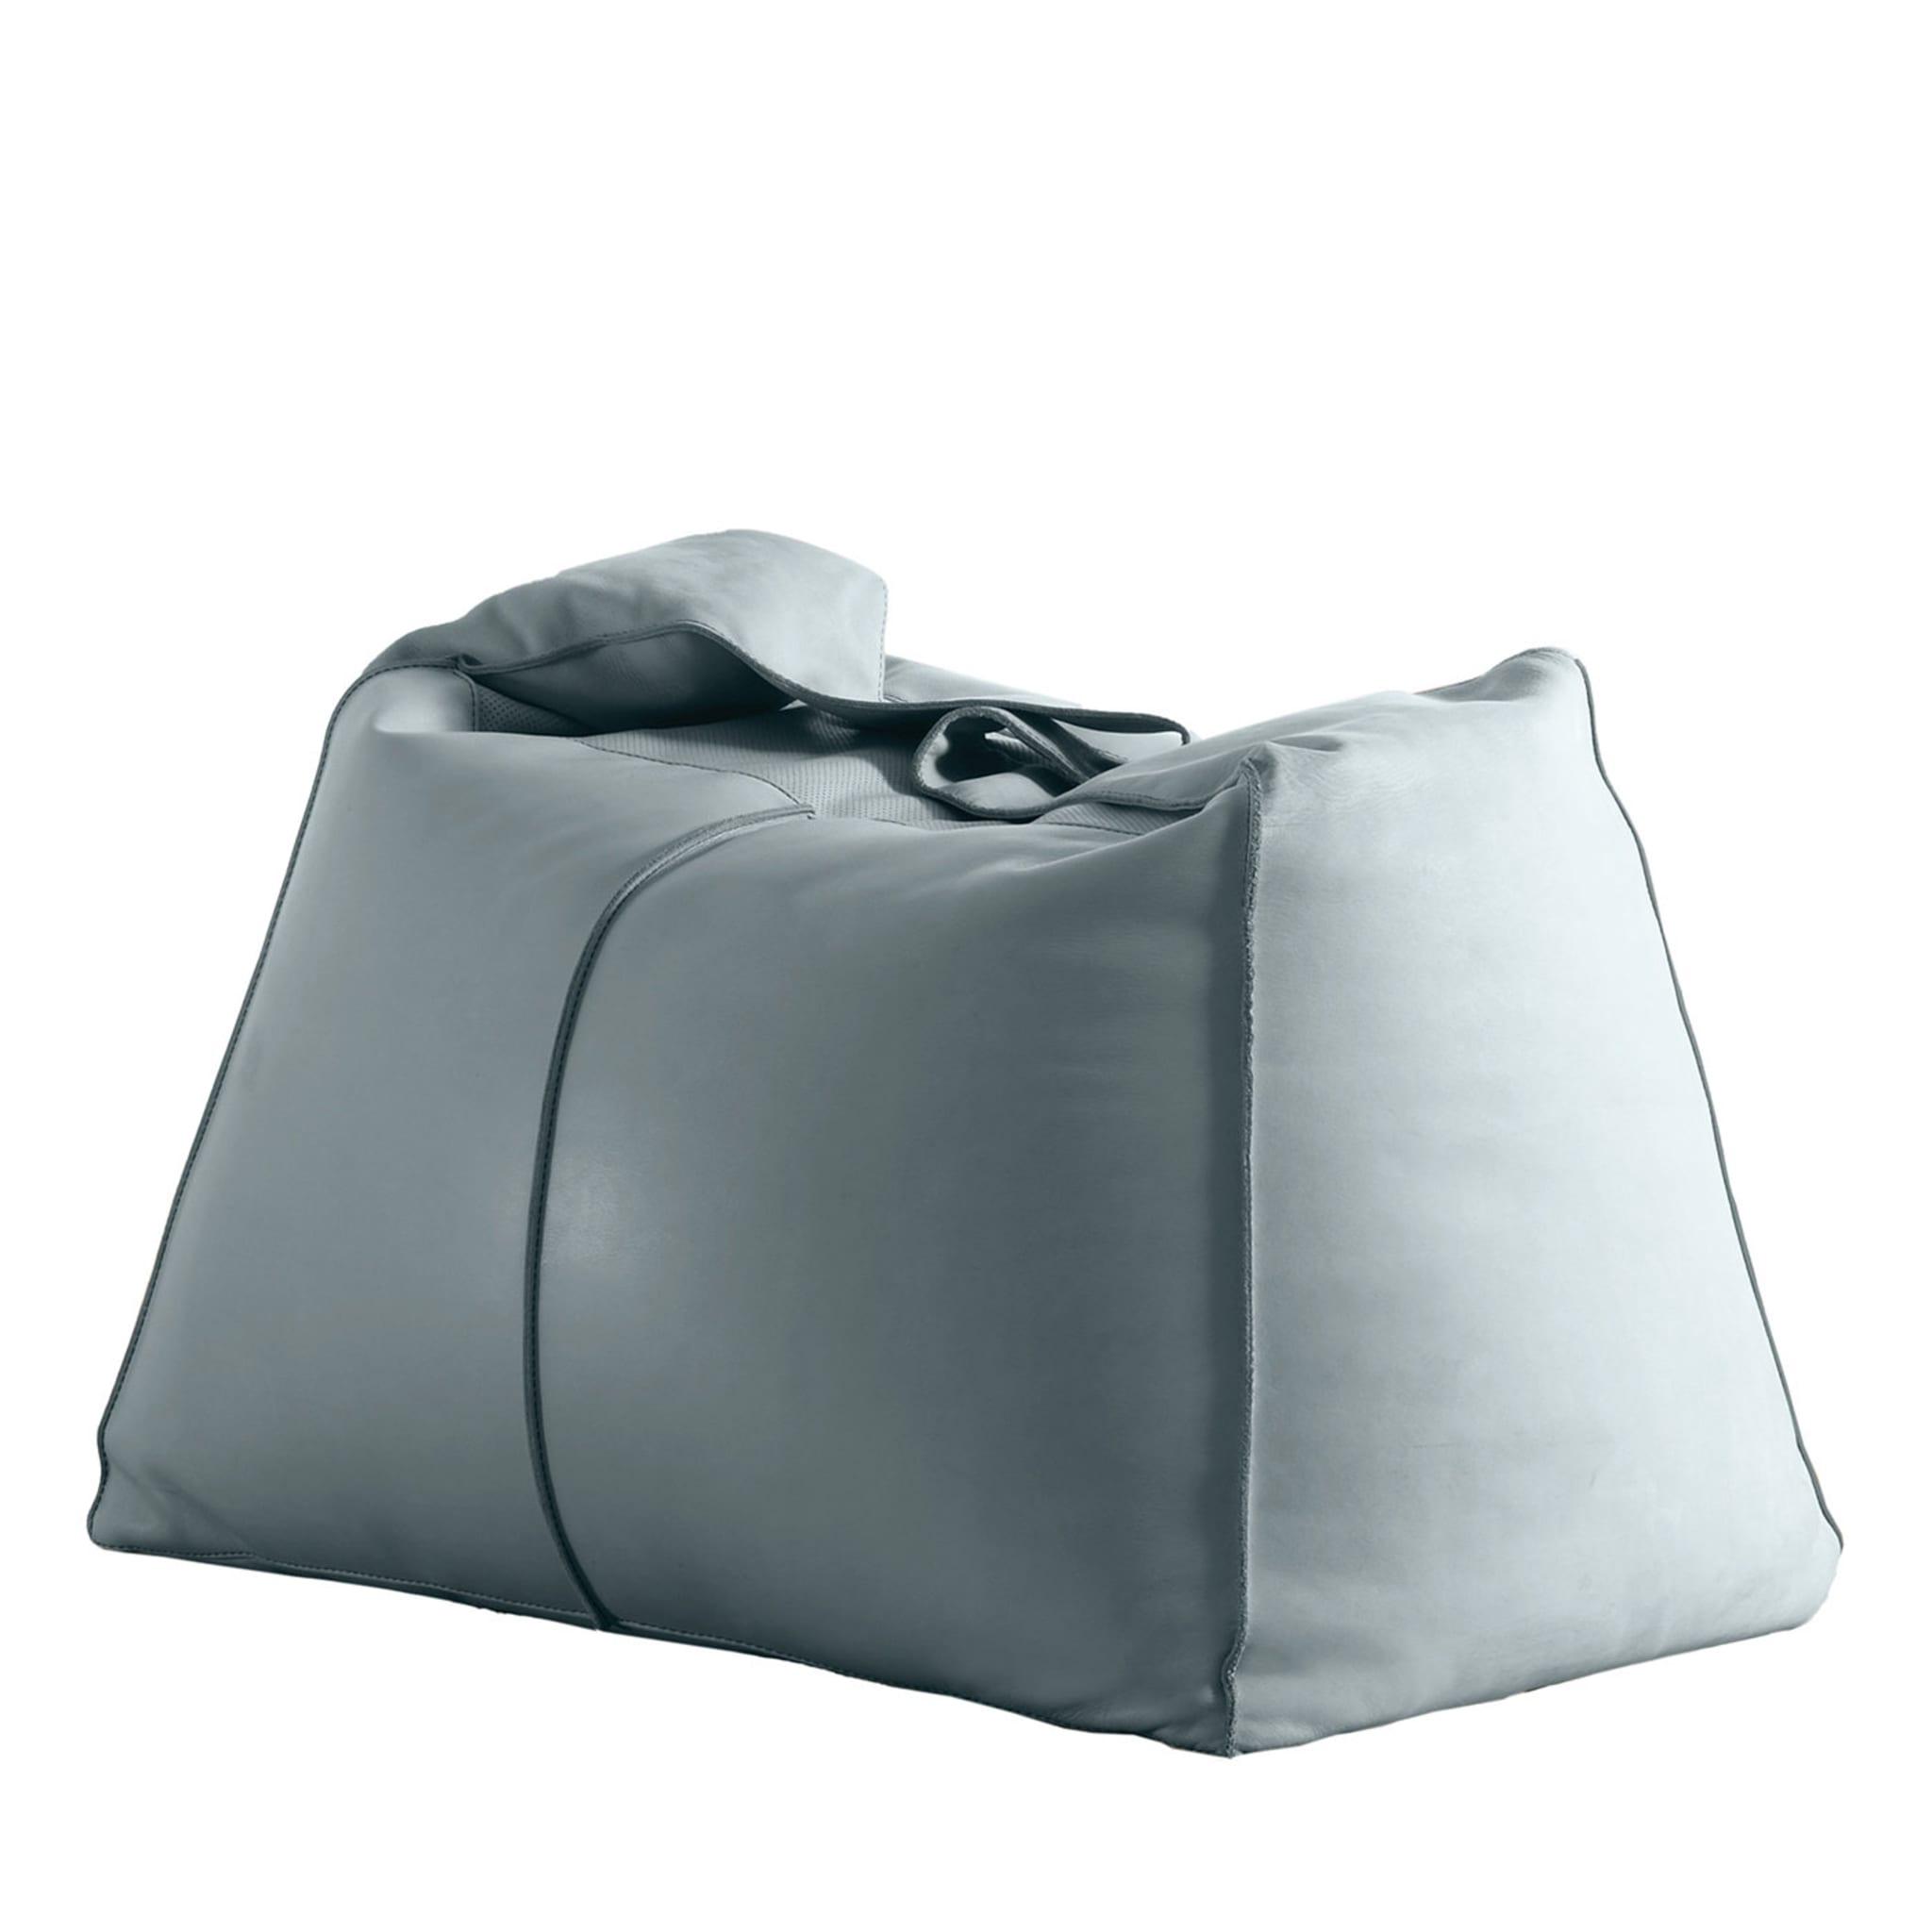 Bean Bag Chairs - Artisan Italian Design